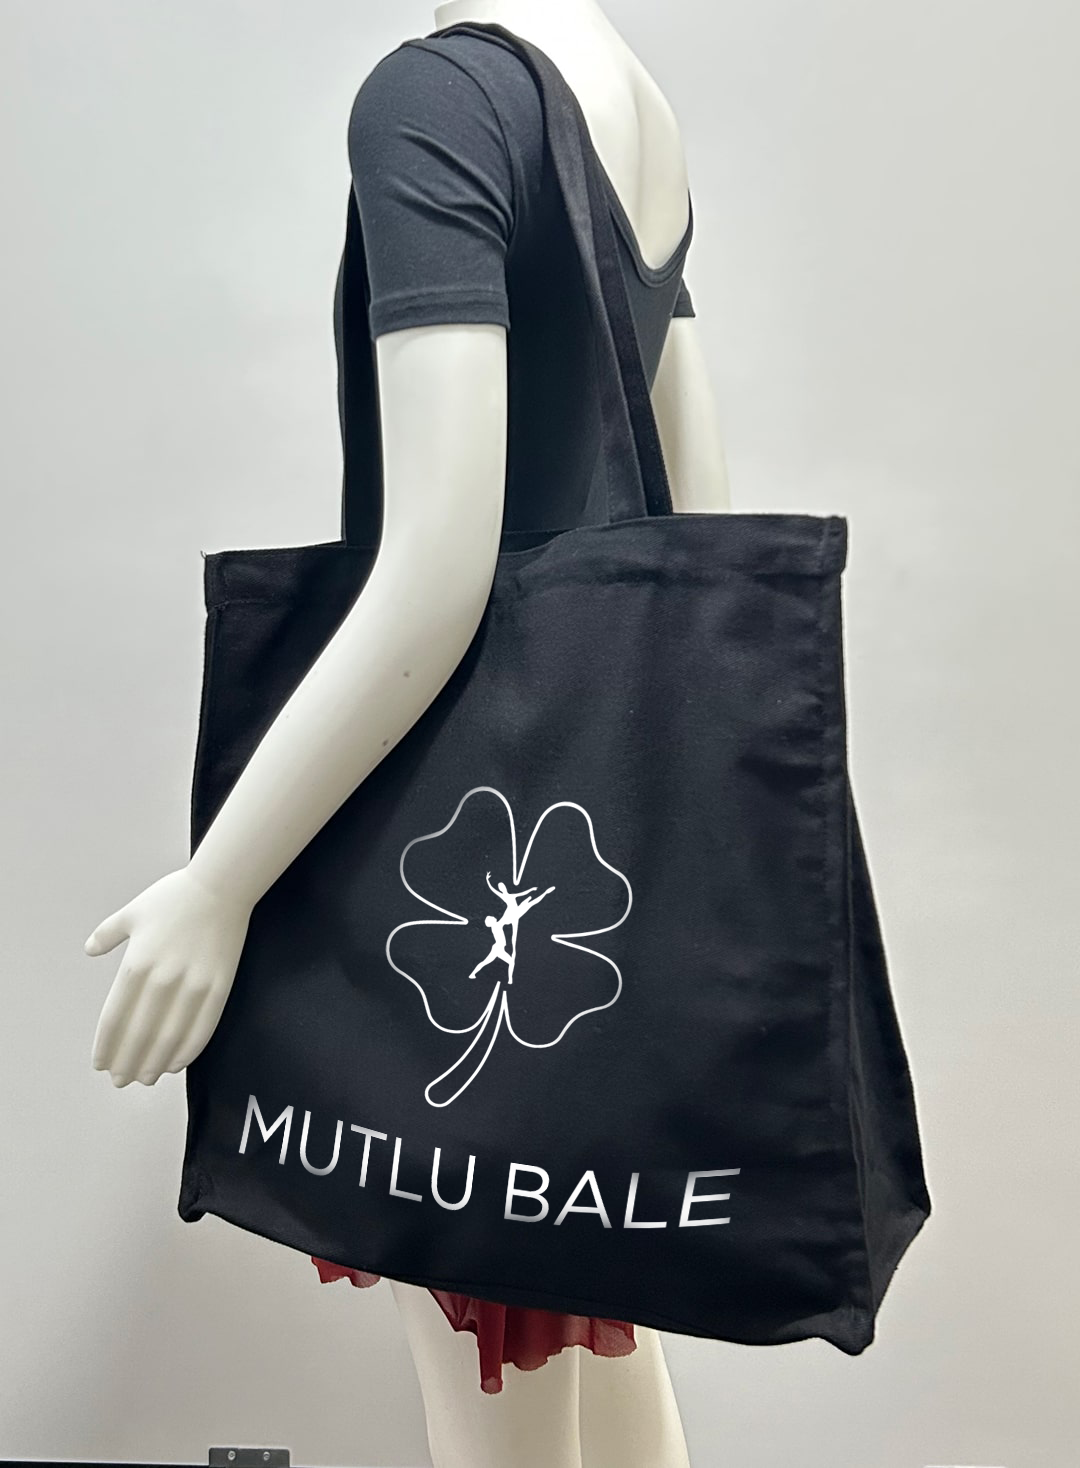 MUTLU BALE - Mutlu Bale Tote Bag